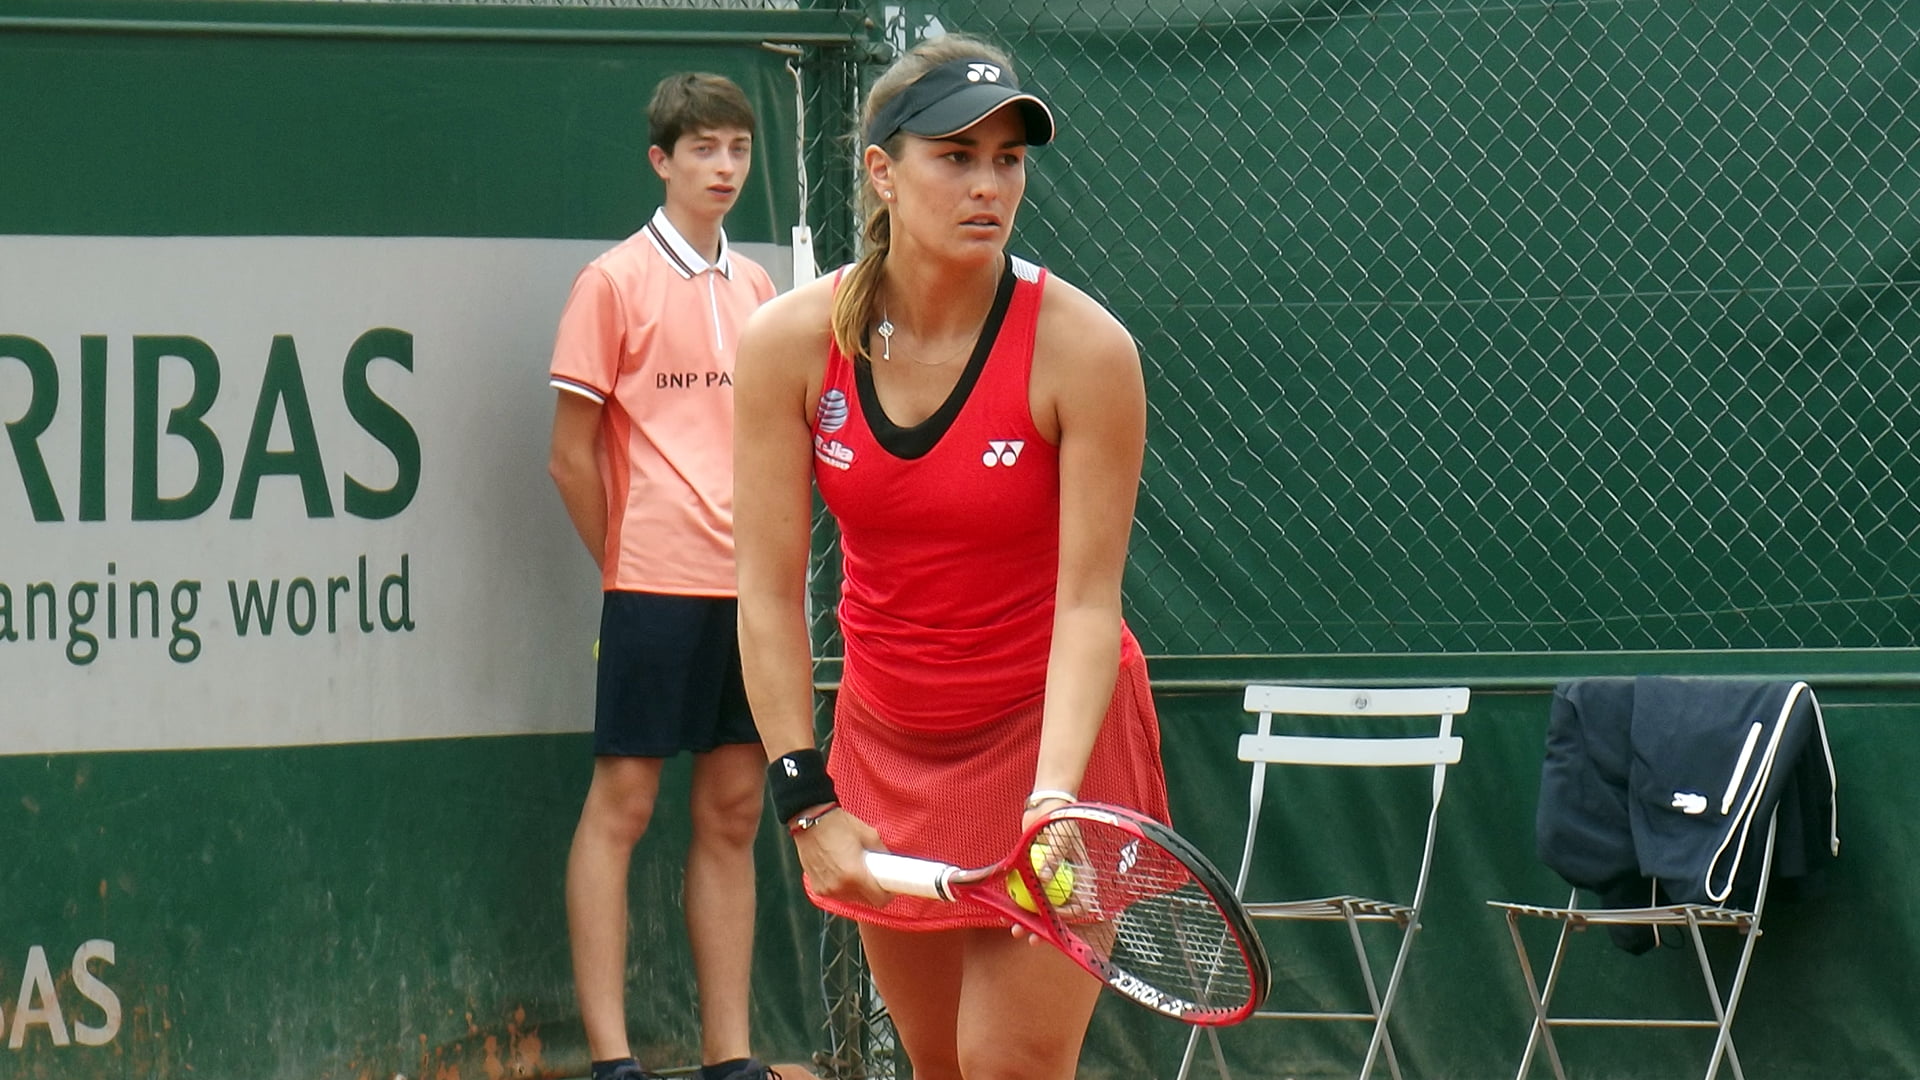 Monica Puig at Roland Garros 2019